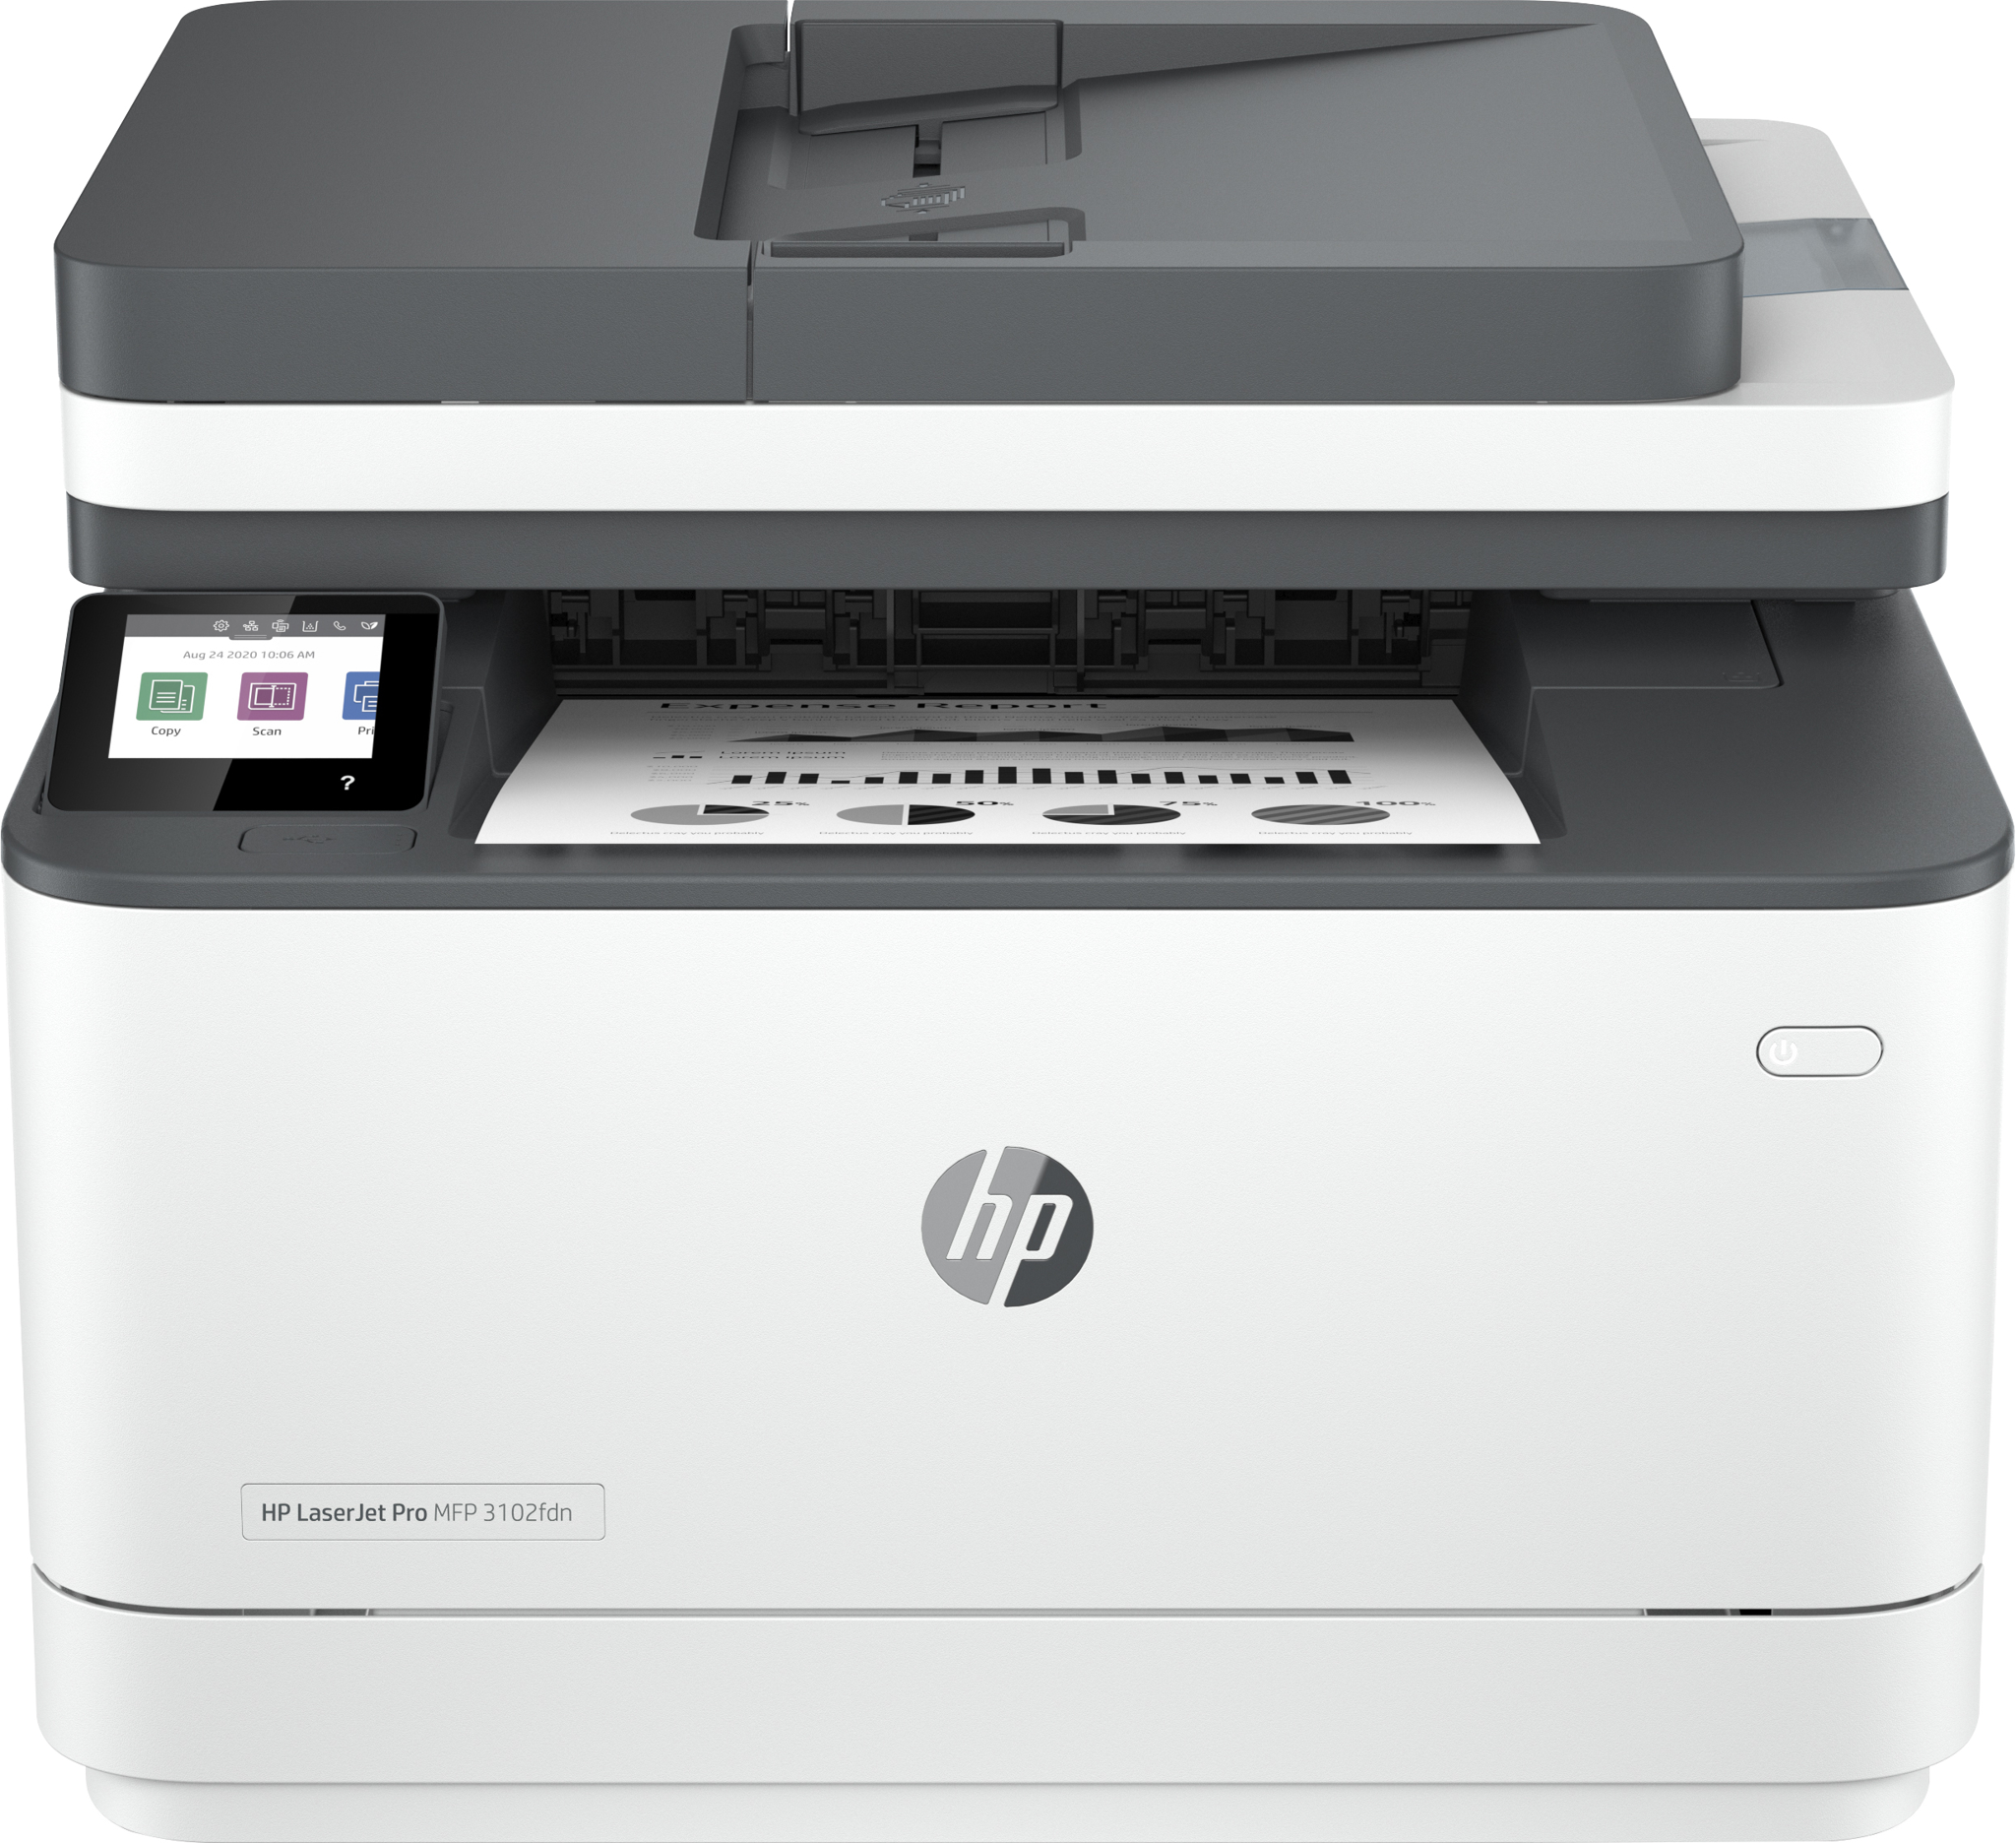 Bild von HP LaserJet Pro Multifunktionsdrucker 3102fdn Drucker - Schwarzweiß - Drucker für Kleine und mittlere Unternehmen - Drucken - Kopieren - Scannen - Faxen - Automatischer Vorlageneinzug; Beidseitiger Druck; USB-Flash-Laufwerkanschluss (vorne); Touchscreen - La